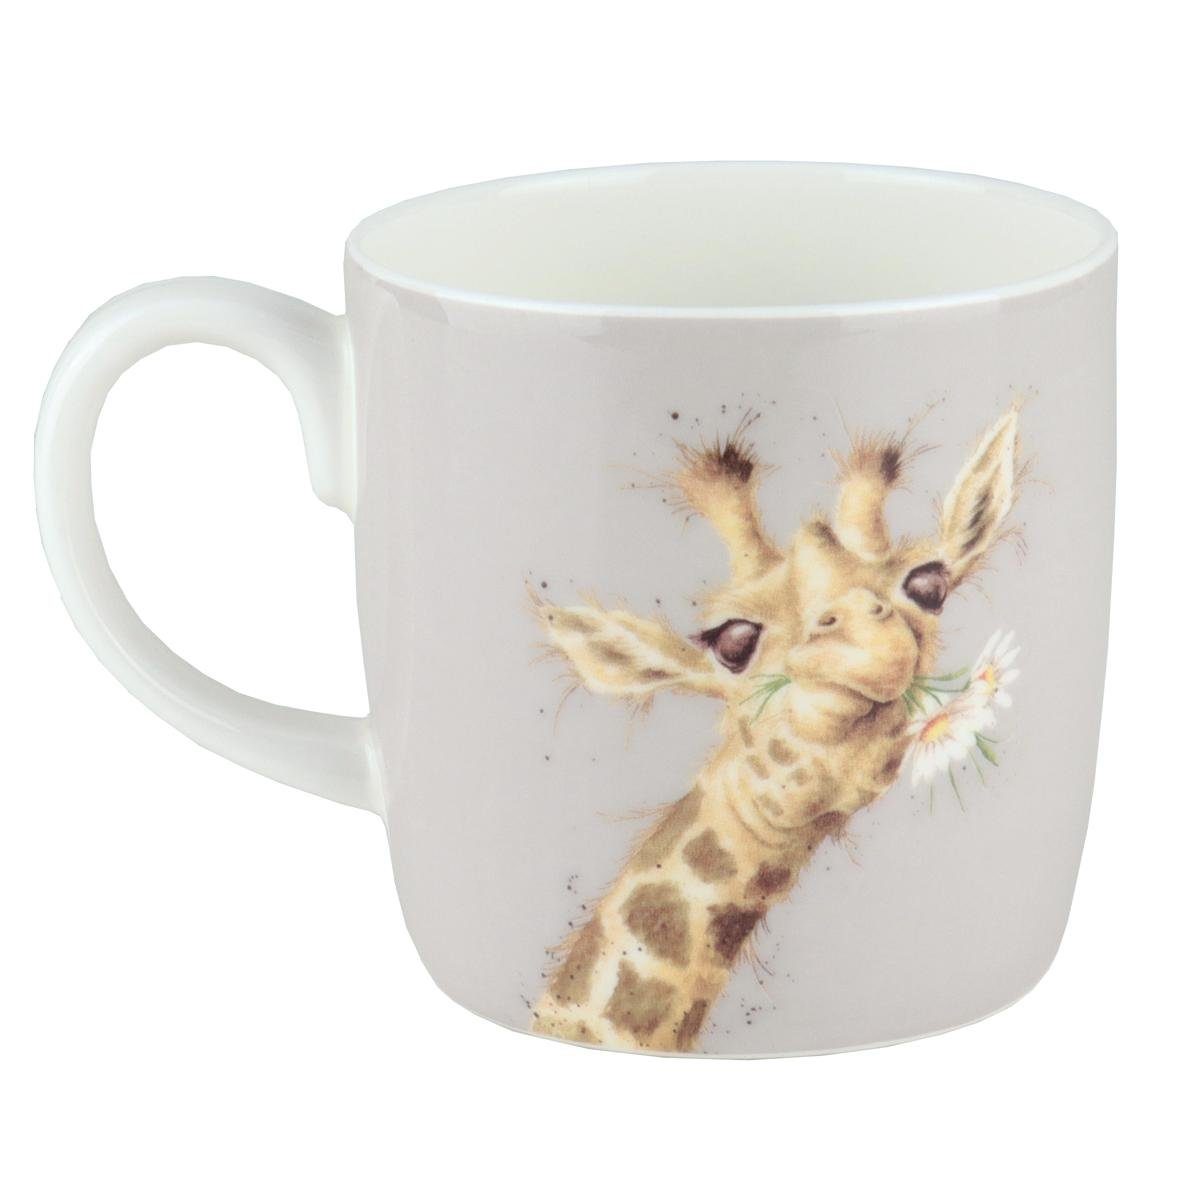 Designs Porzellan Giraffe Porzellan-Becher Wrendale Becher Wrendale Daisy,